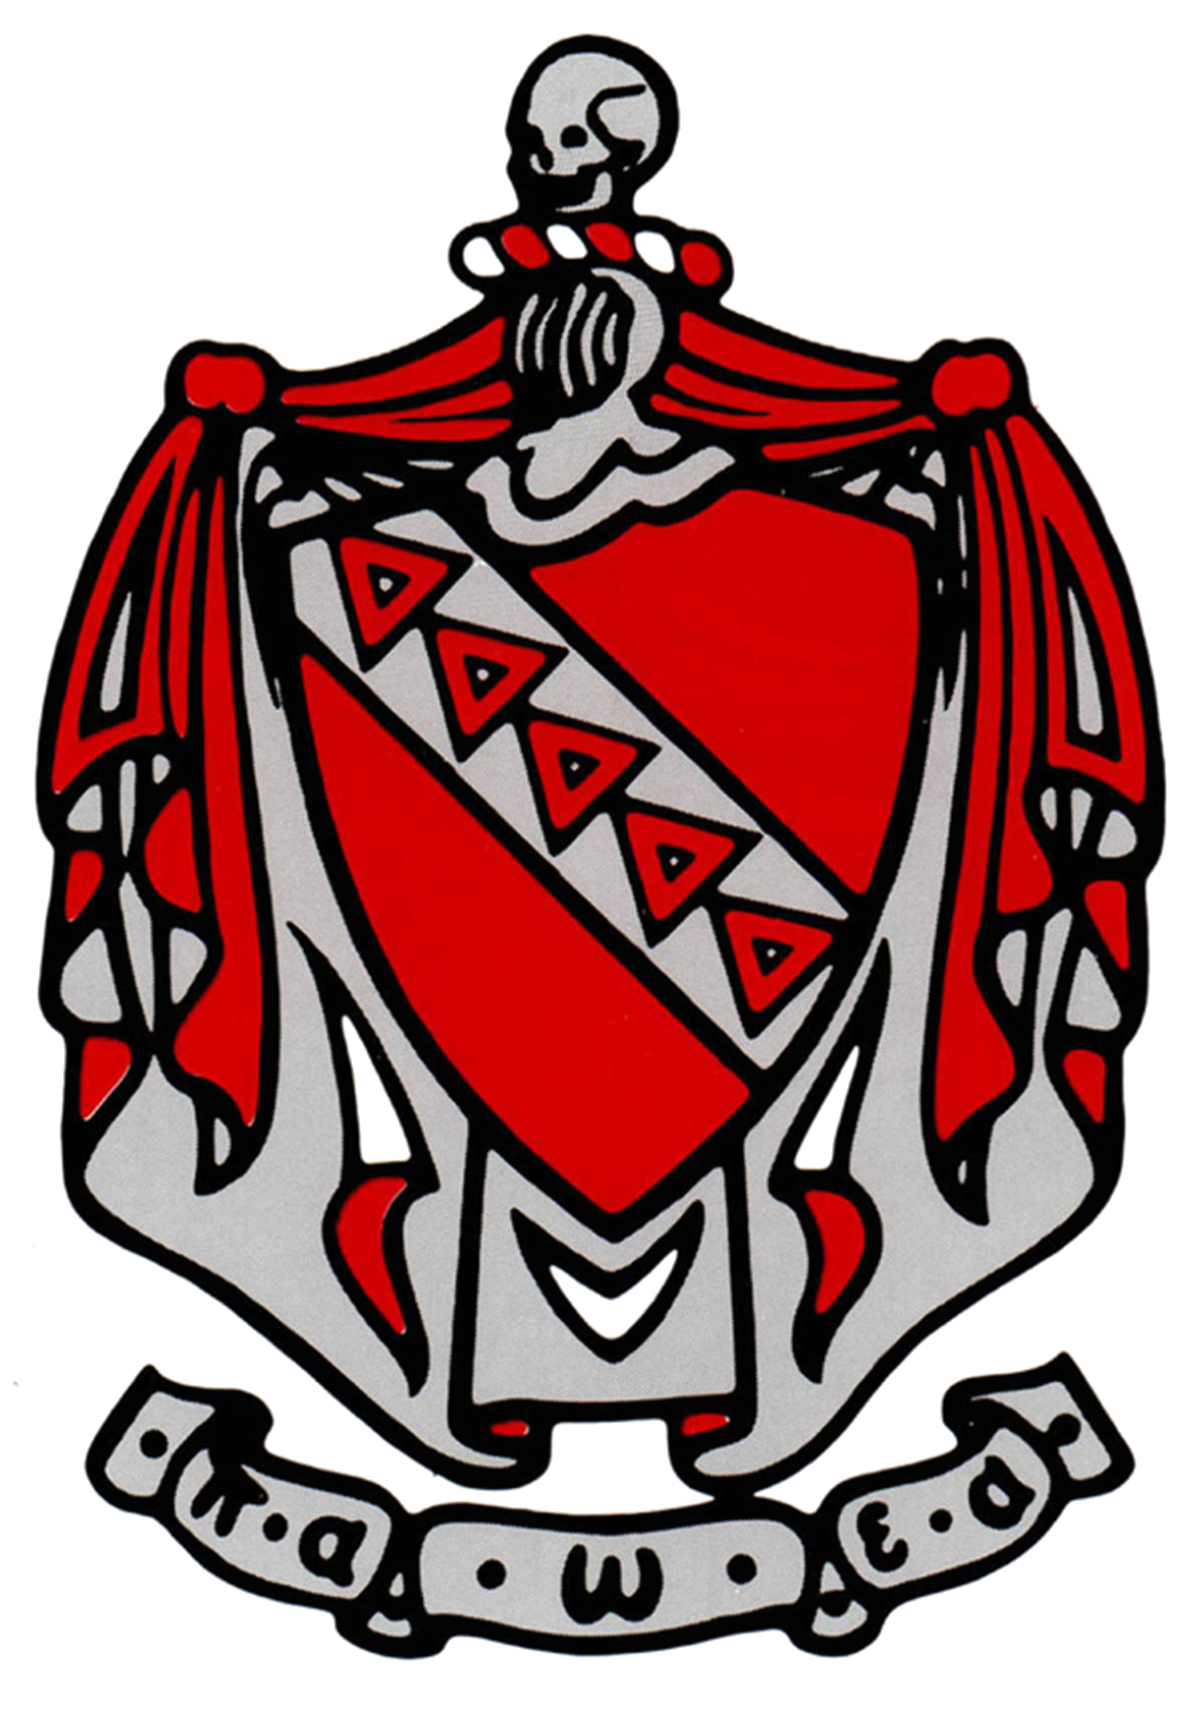 Tau Kappa Epsilon Coat of Arms